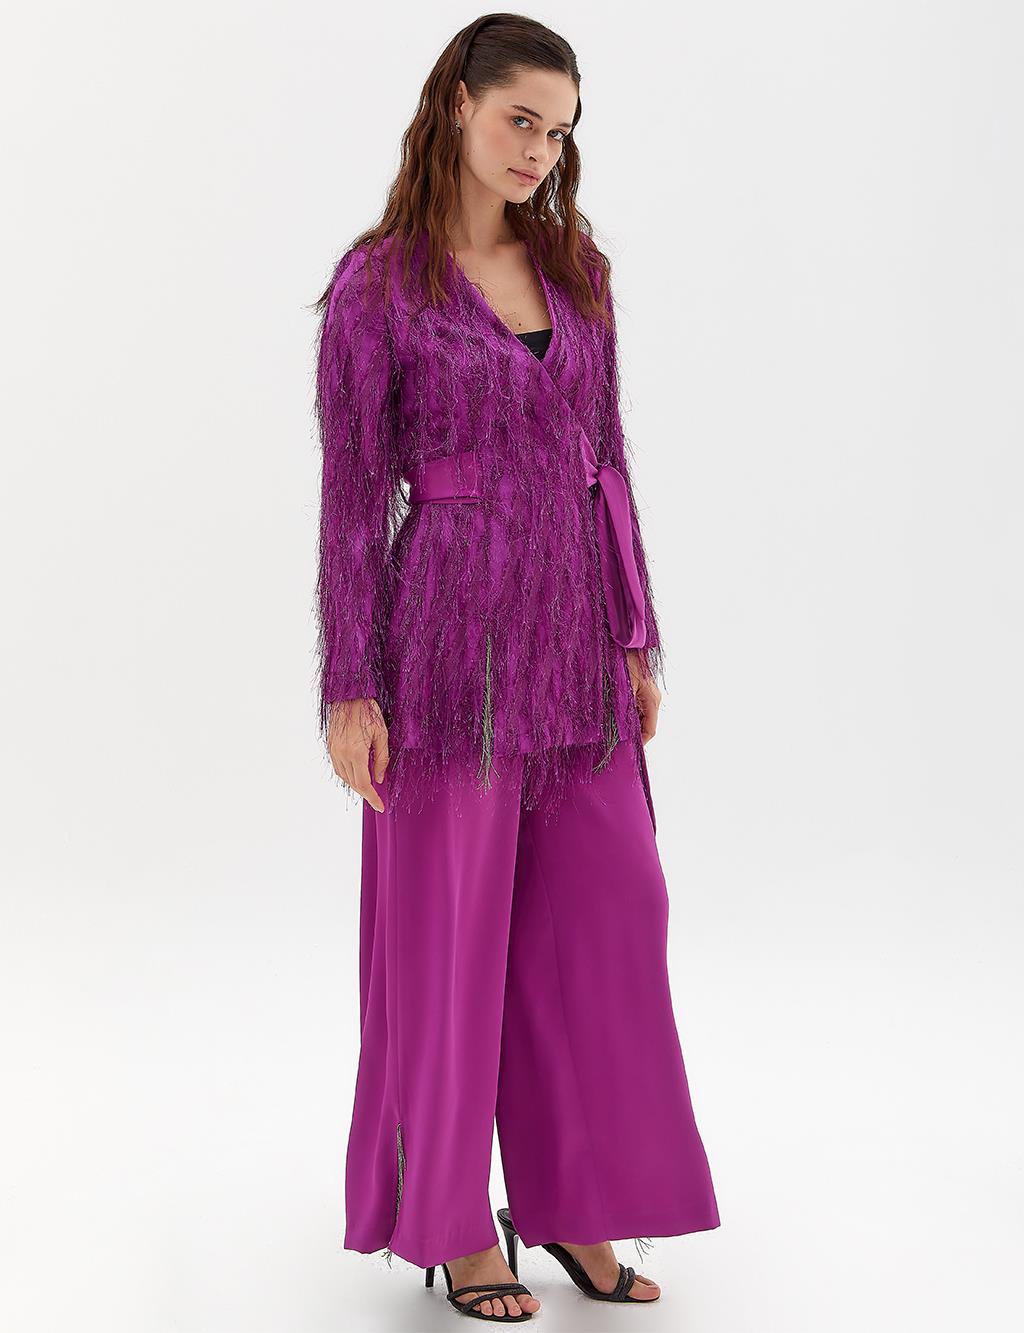 Двойной костюм с блестящей кисточкой и бахромой, фиолетовый Kayra фотографии